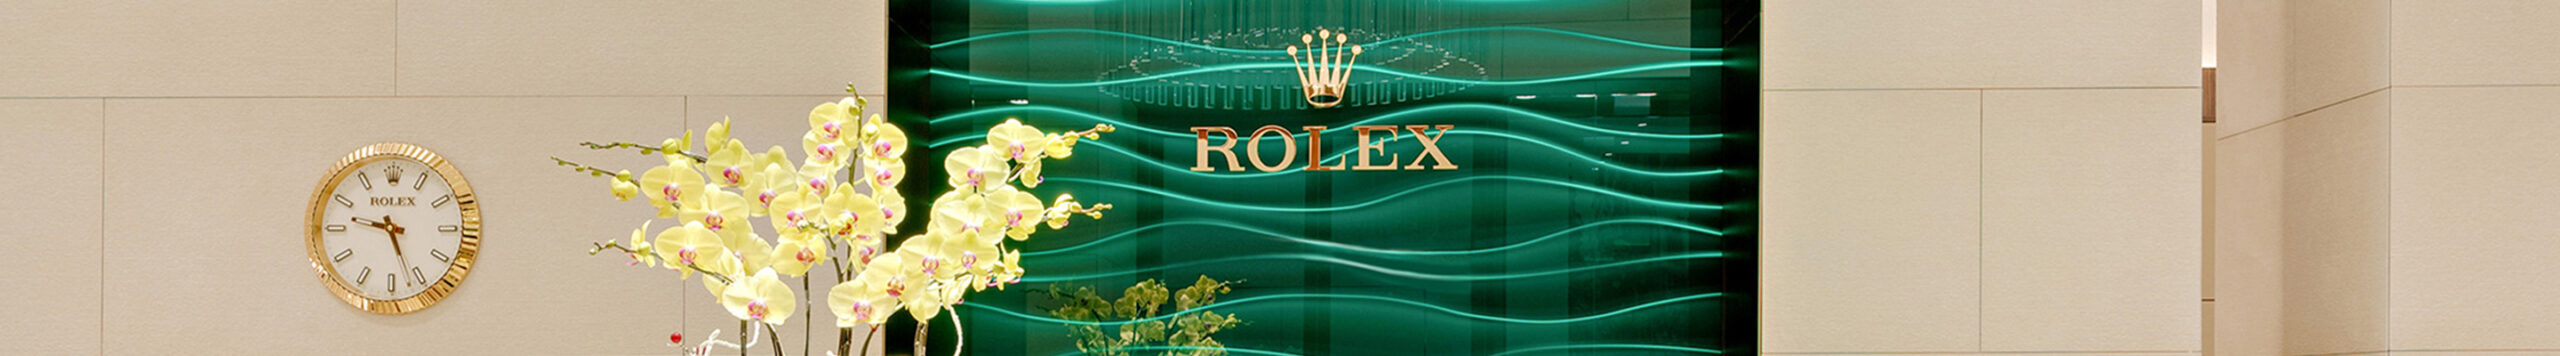 Contact John Bull Official Rolex Dealer